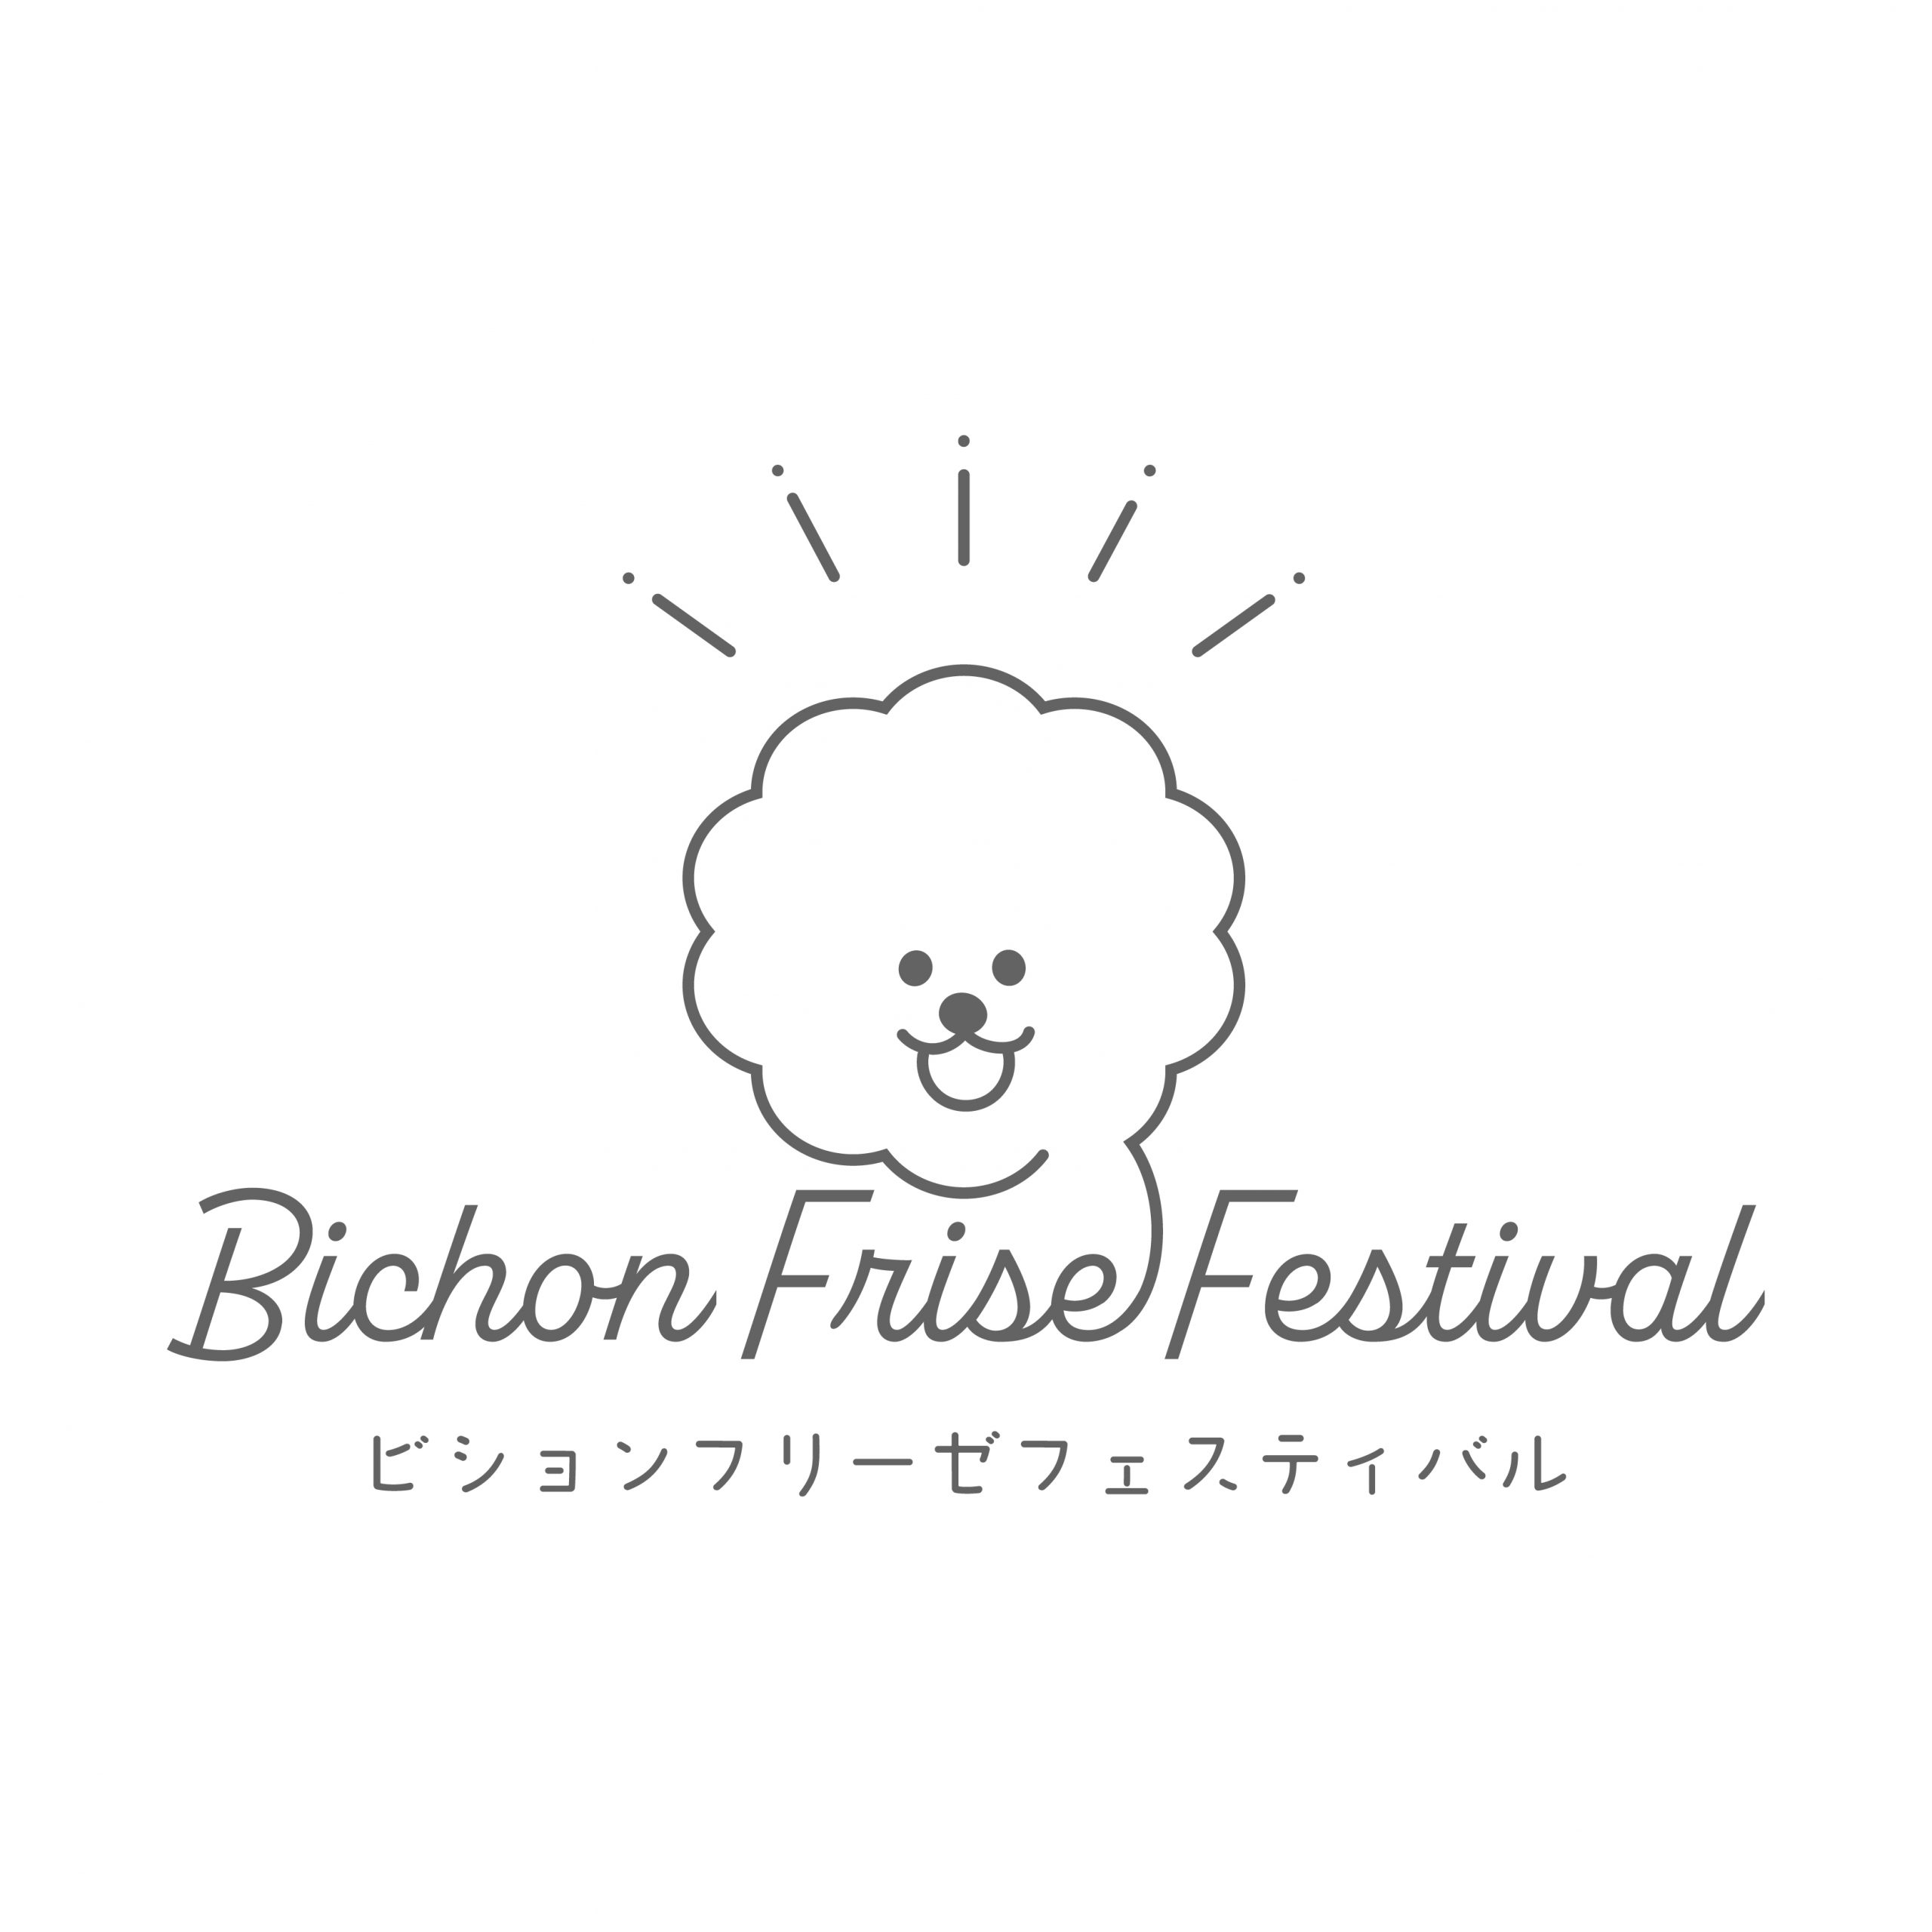 bichonfrise_festival